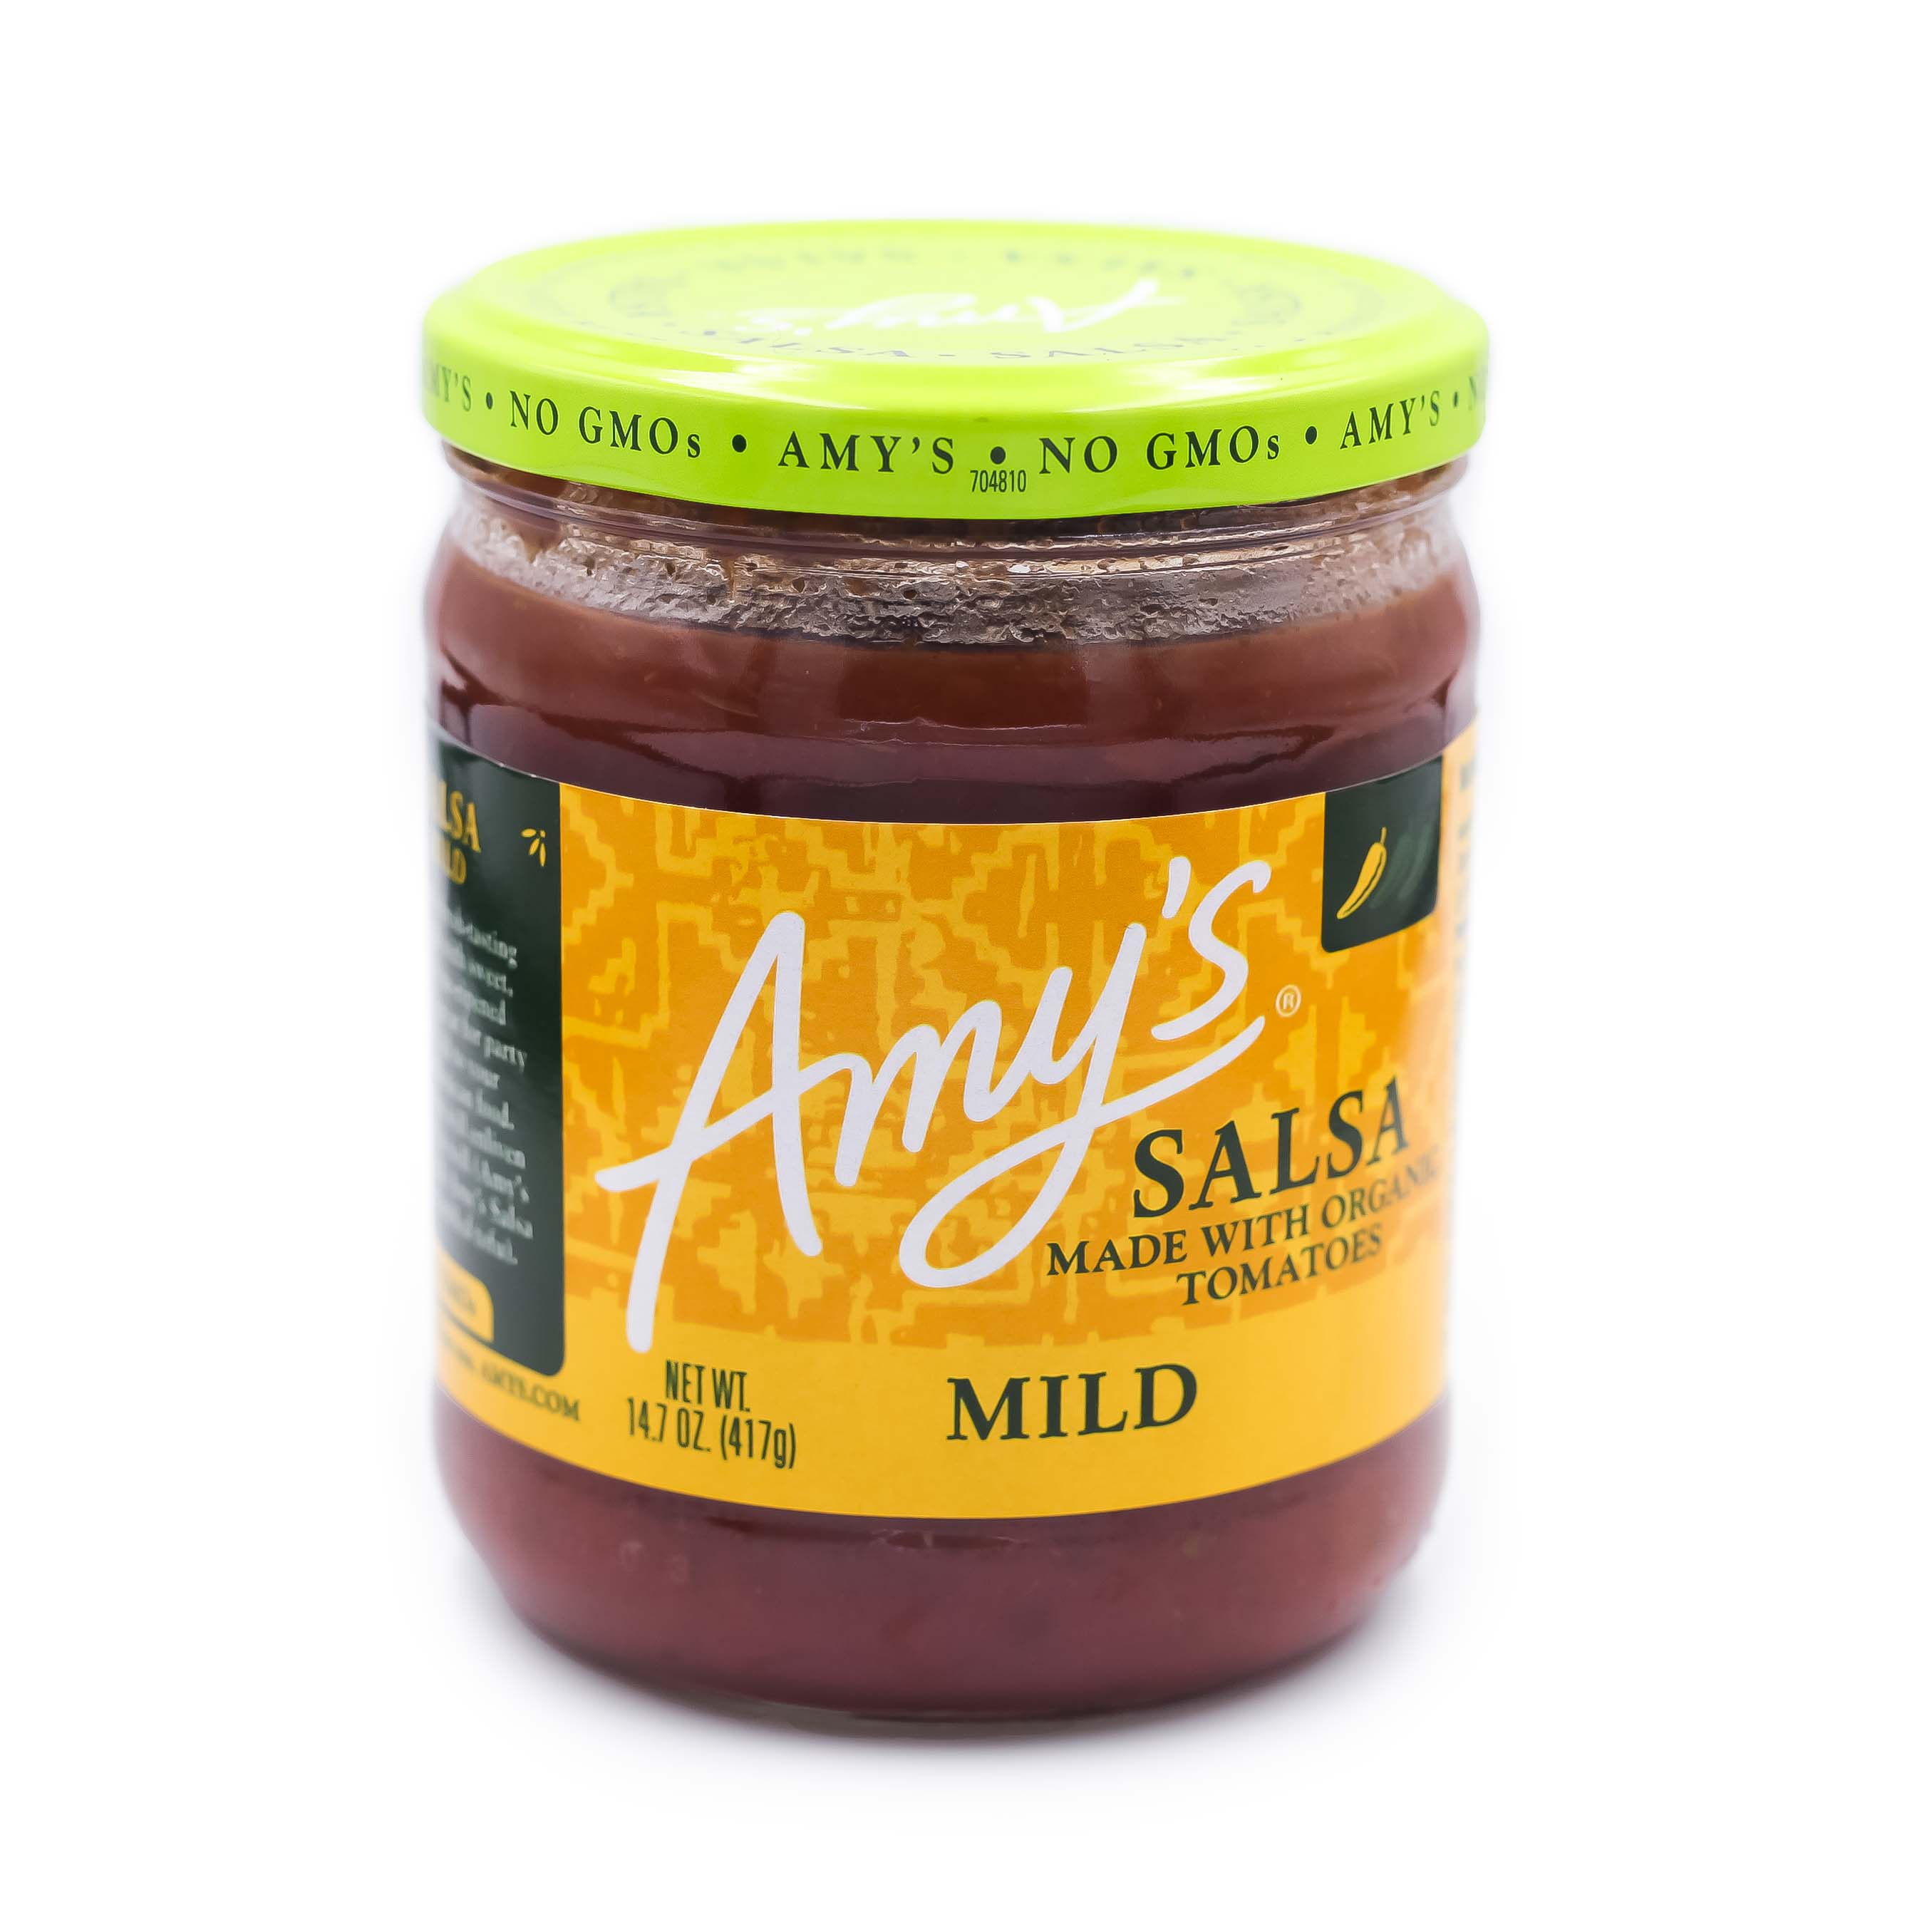 Amy's Organic Mild Salsa